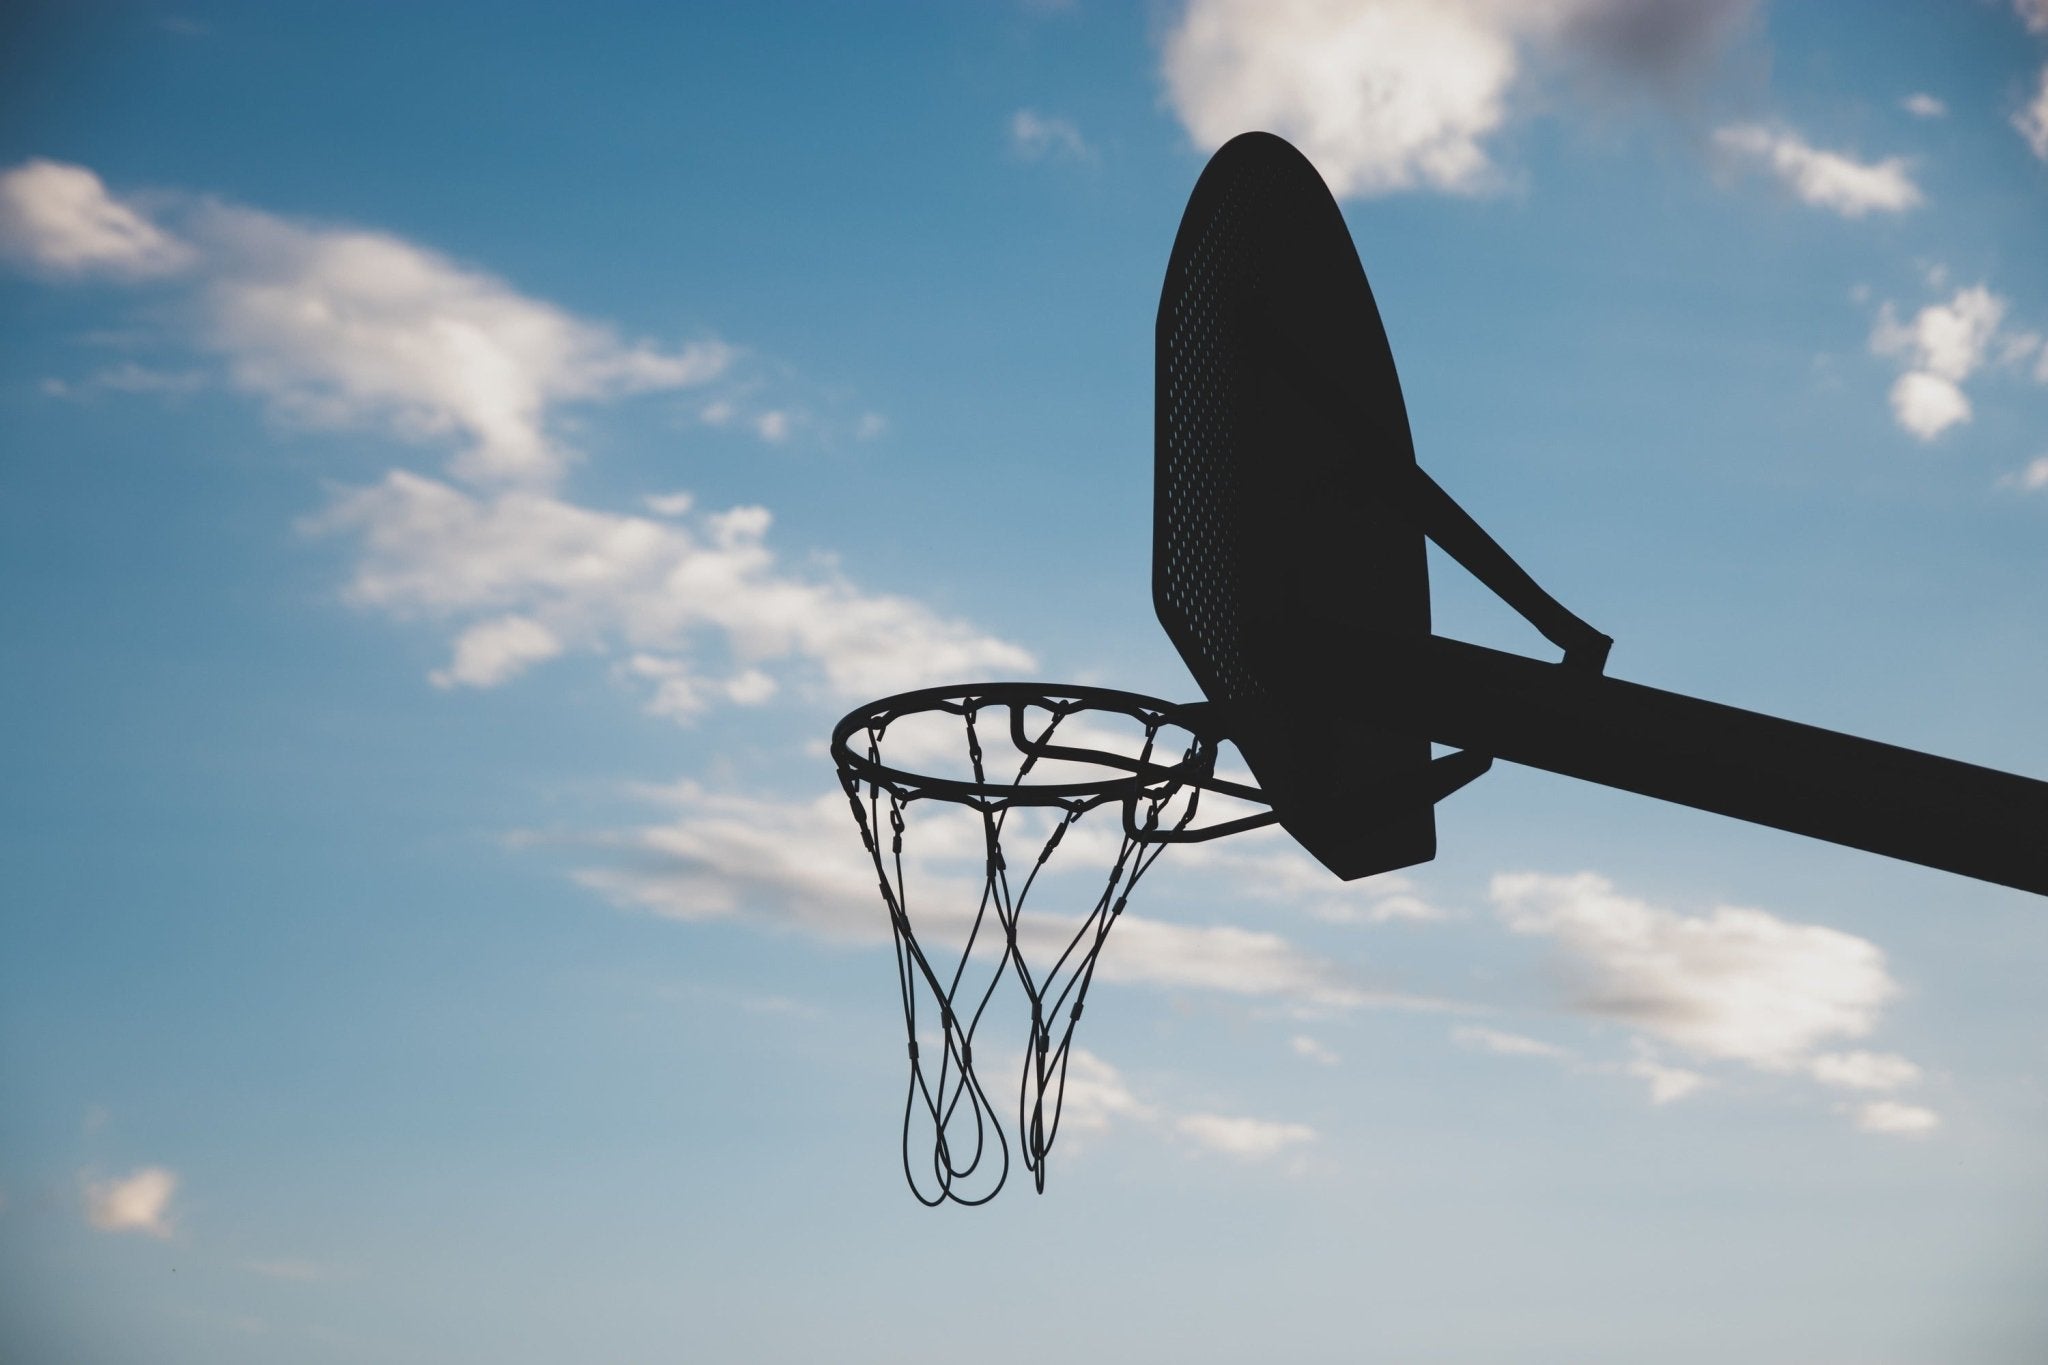 Cuál es la altura de la canasta de basquetbol?